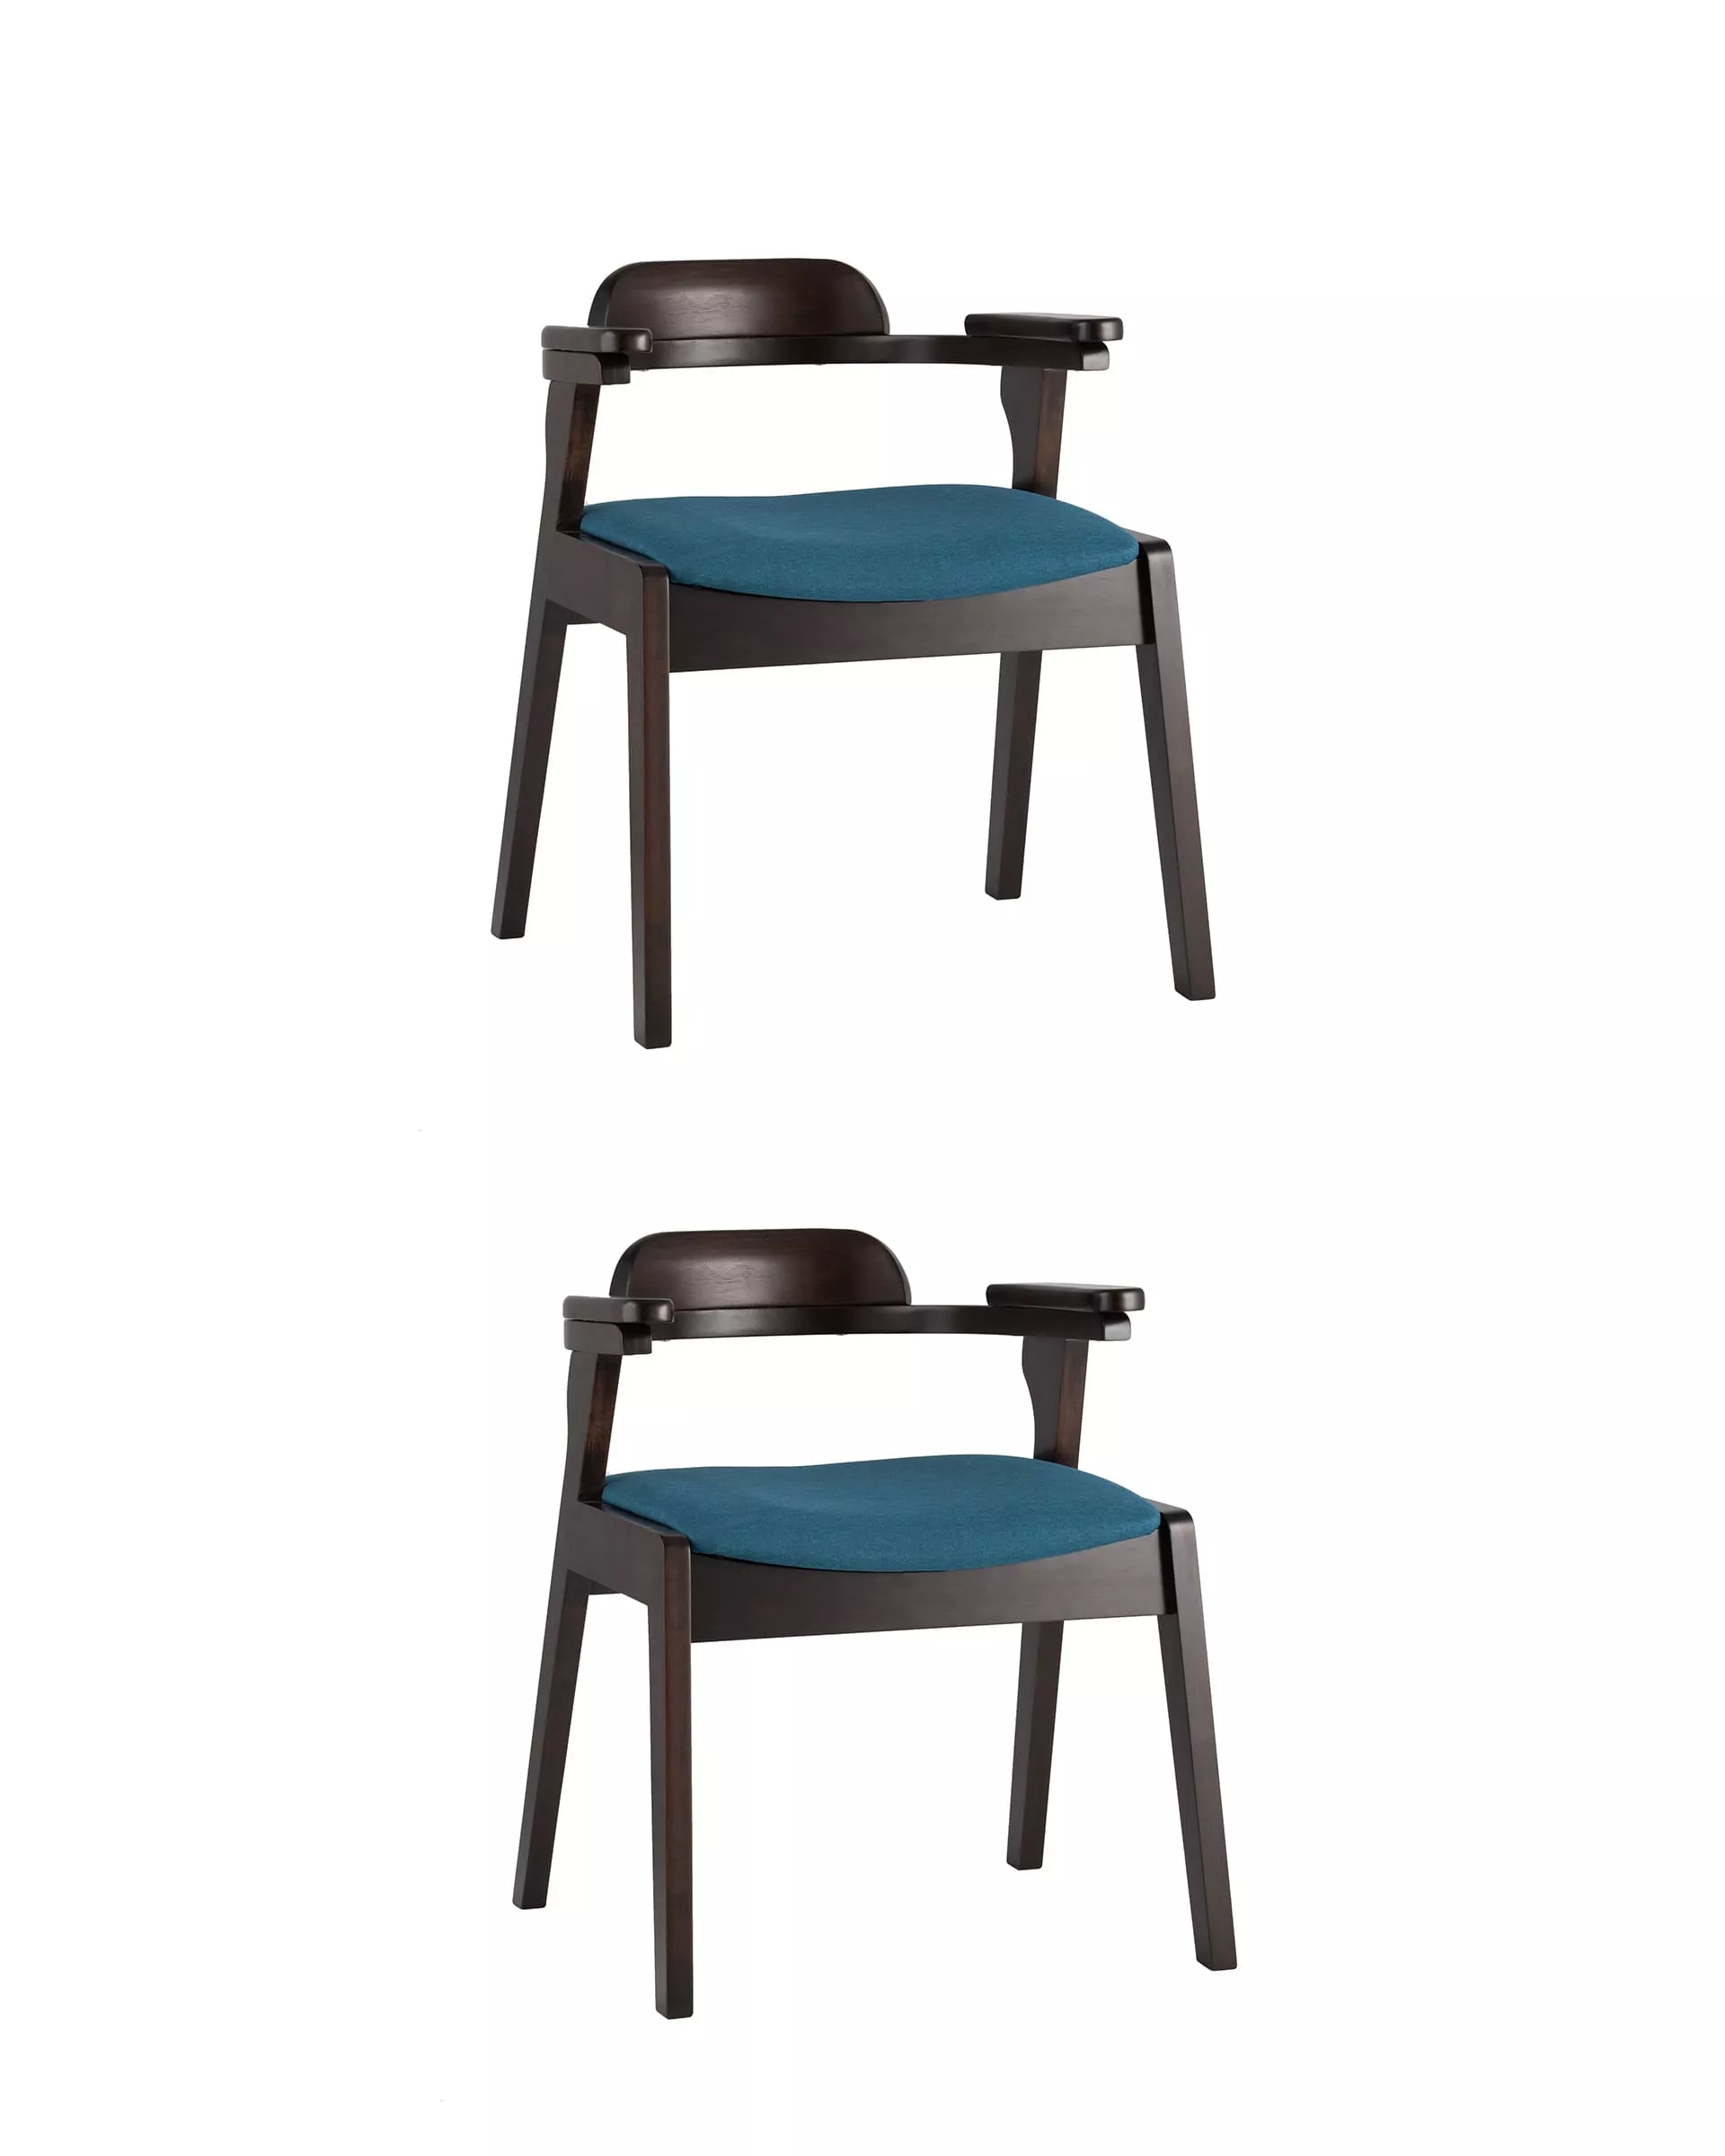 Комплект стульев обеденный VINCENT синий 2 шт